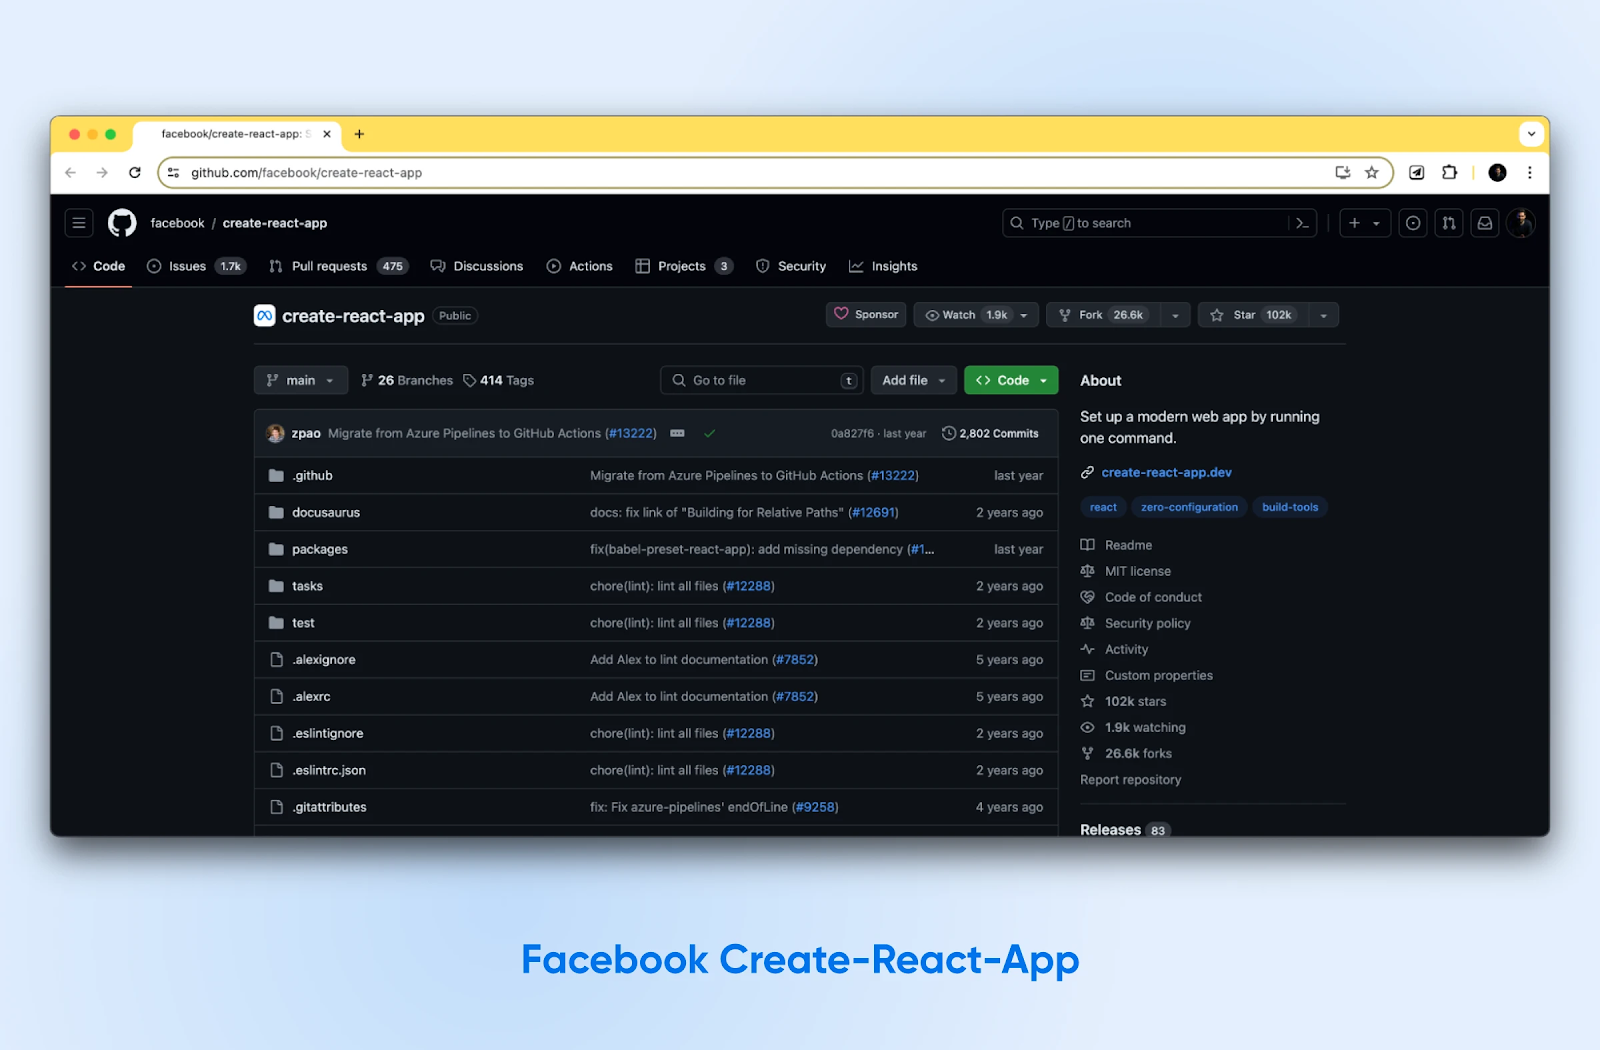 La aplicación Create-React-App de Facebook tiene un fondo negro y un botón verde de 'Código' para comenzar rápidamente